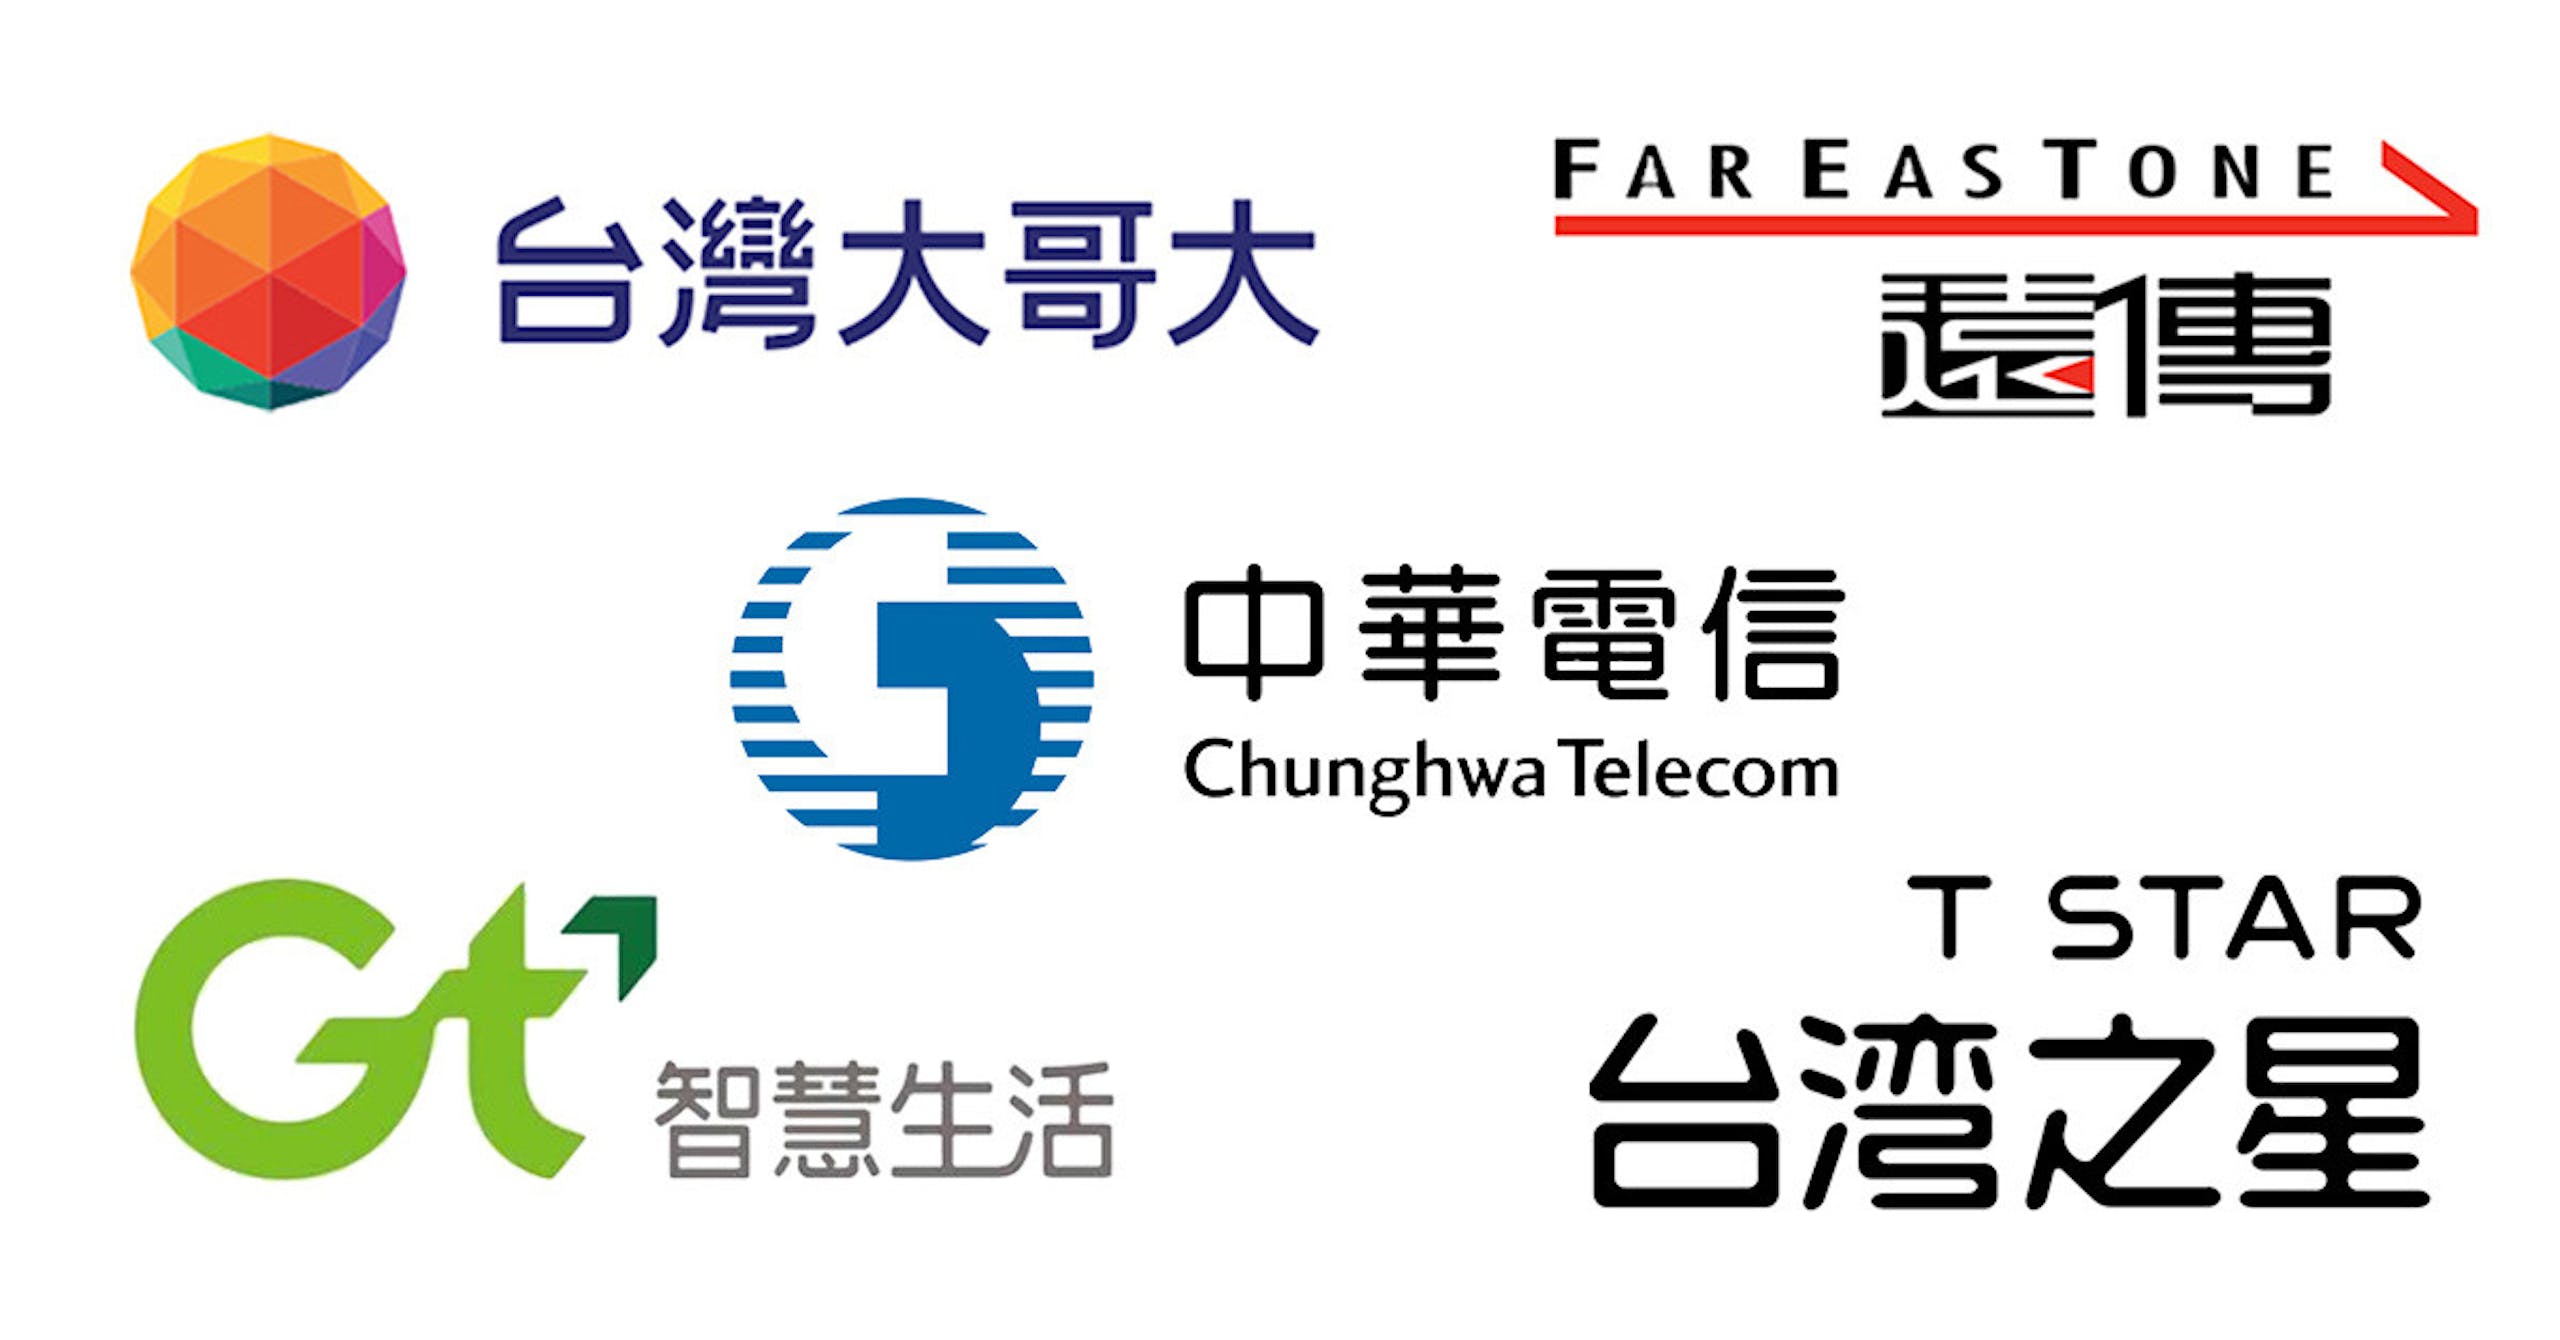 照片中提到了台灣大哥大、FAREASTONE、遠傳，跟中華電信、遠傳通有關，包含了遠傳、遠傳通、台灣手機、電信